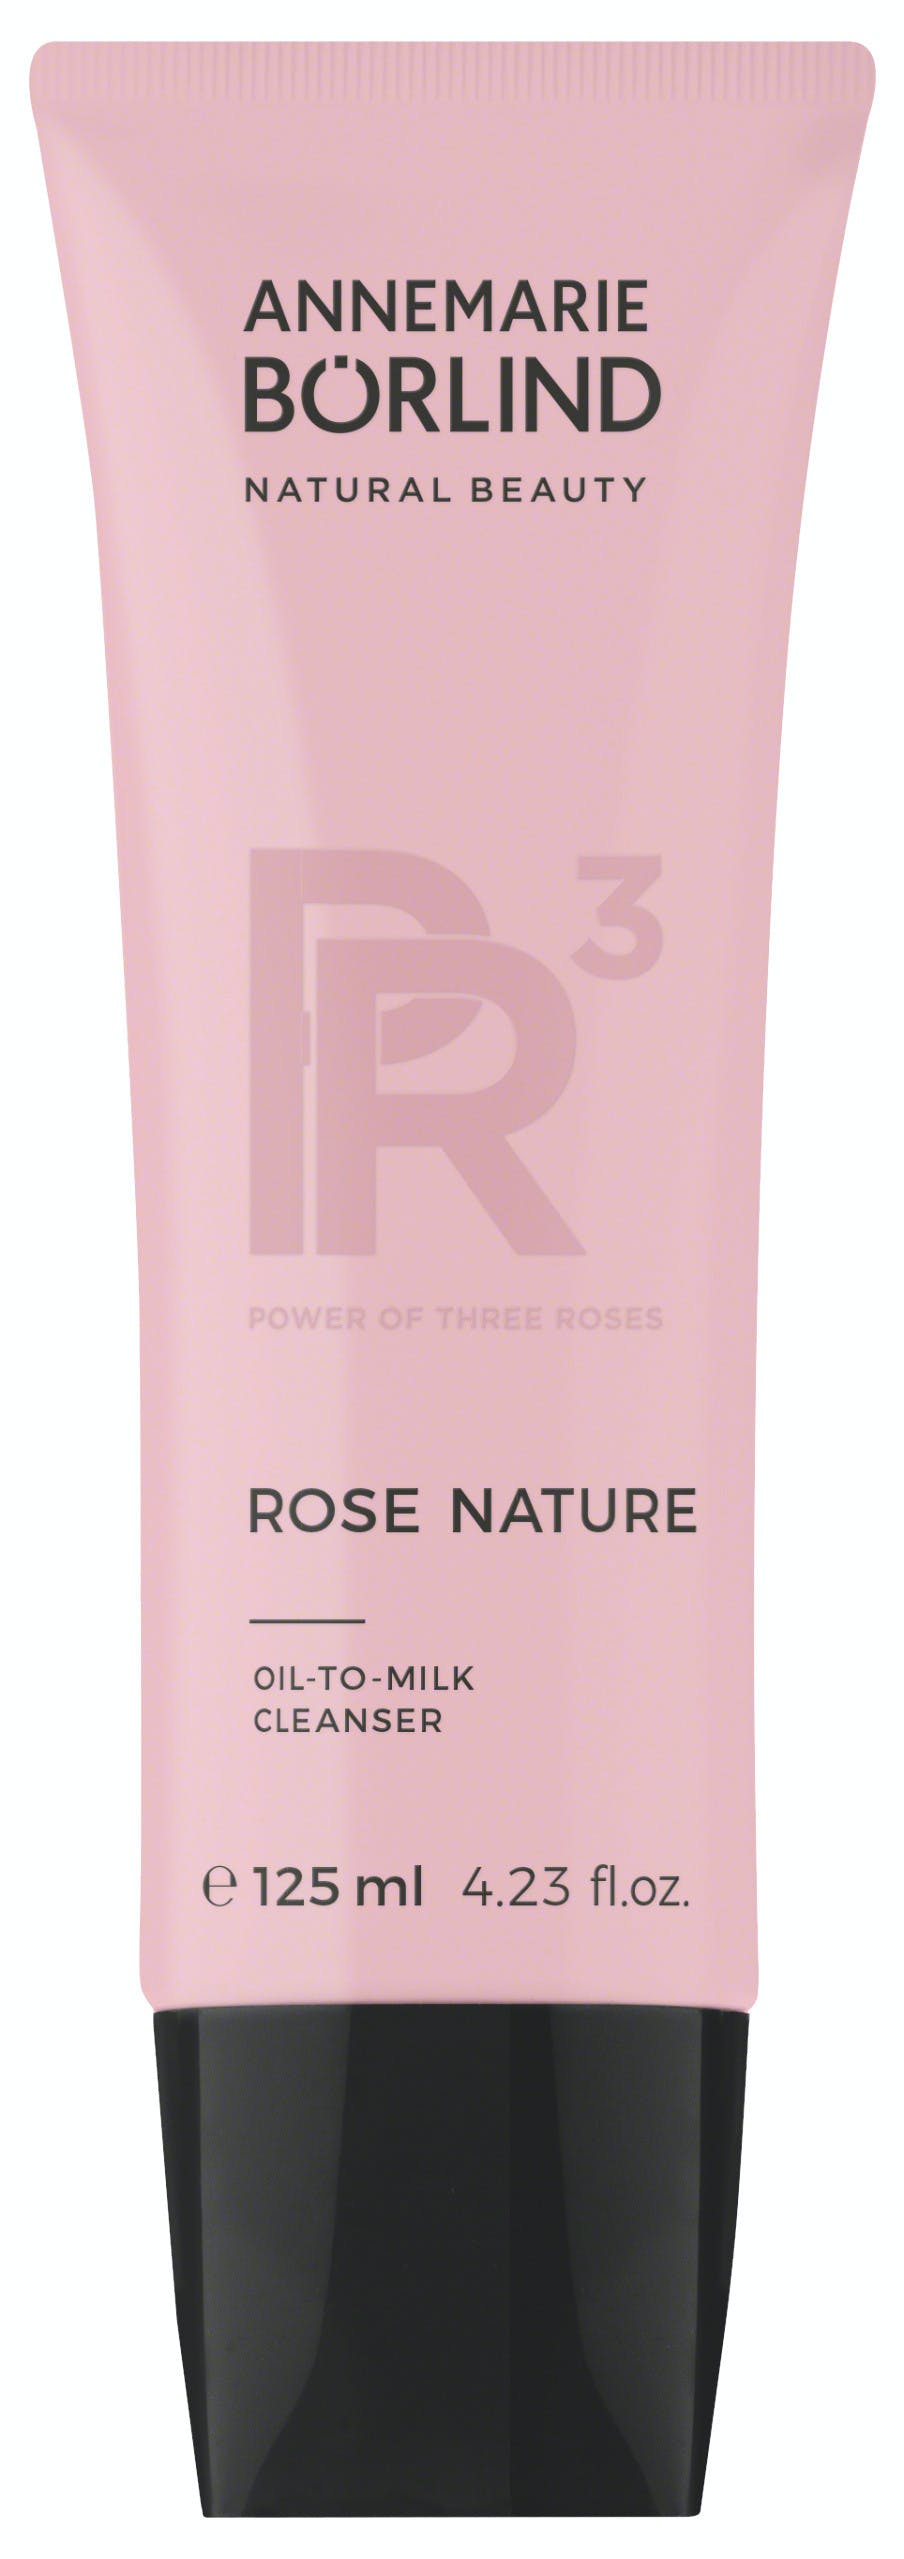 Annemarie Börlind - Rose Nature Oil-to-Milk Cleanser 125 ml - Skjønnhet